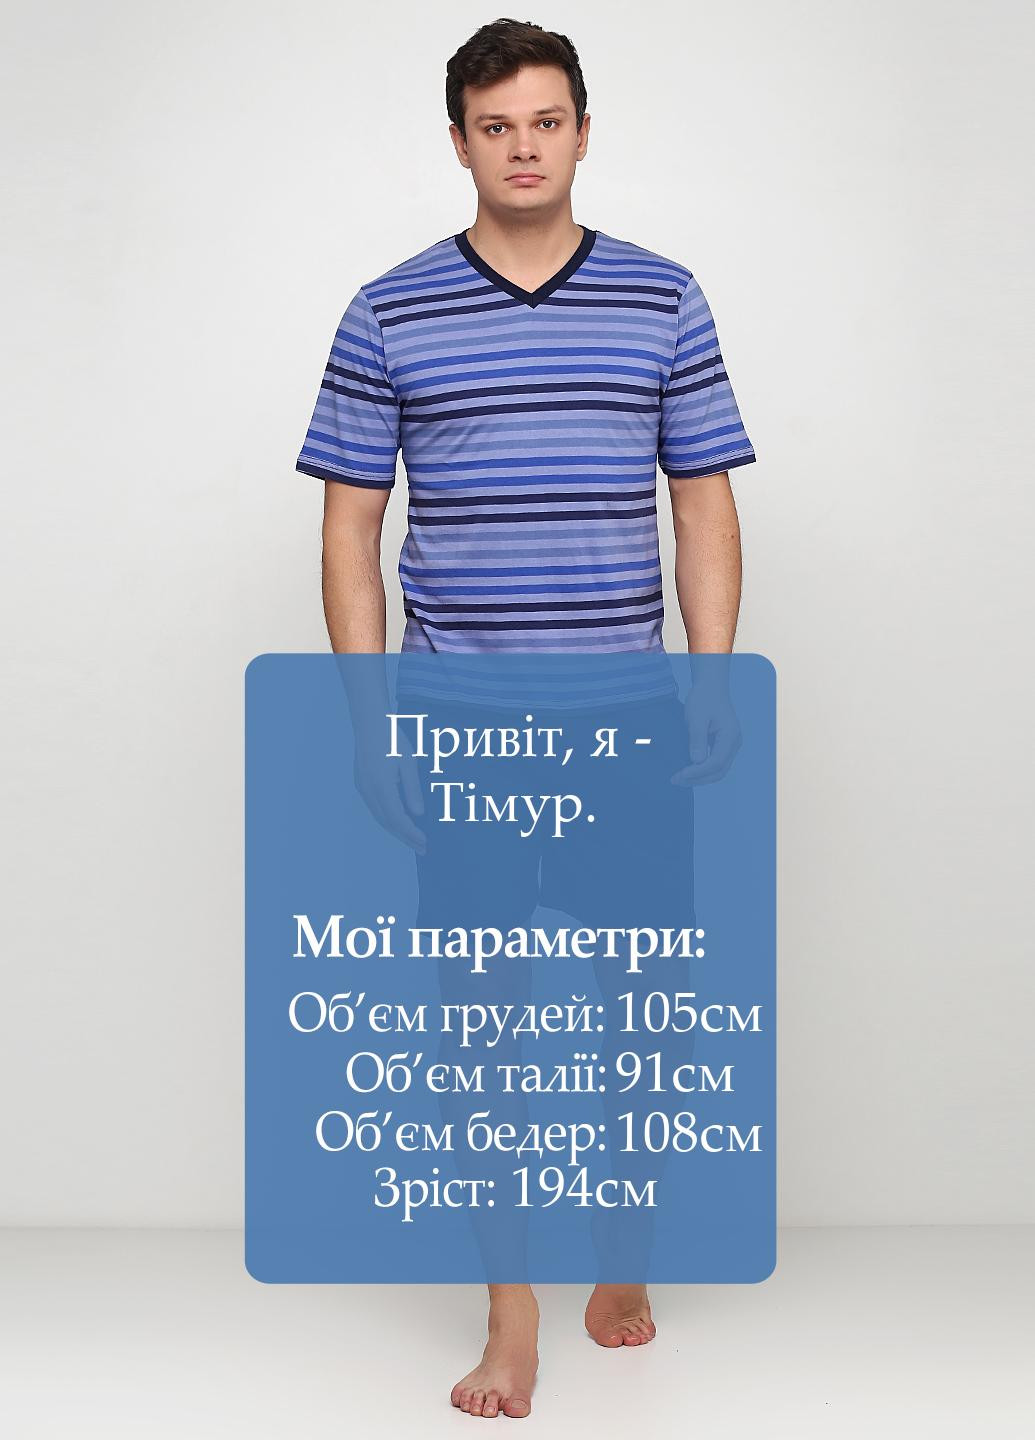 Піжама (футболка, шорти) S.Oliver футболка + шорти смужка темно-синя домашня бавовна